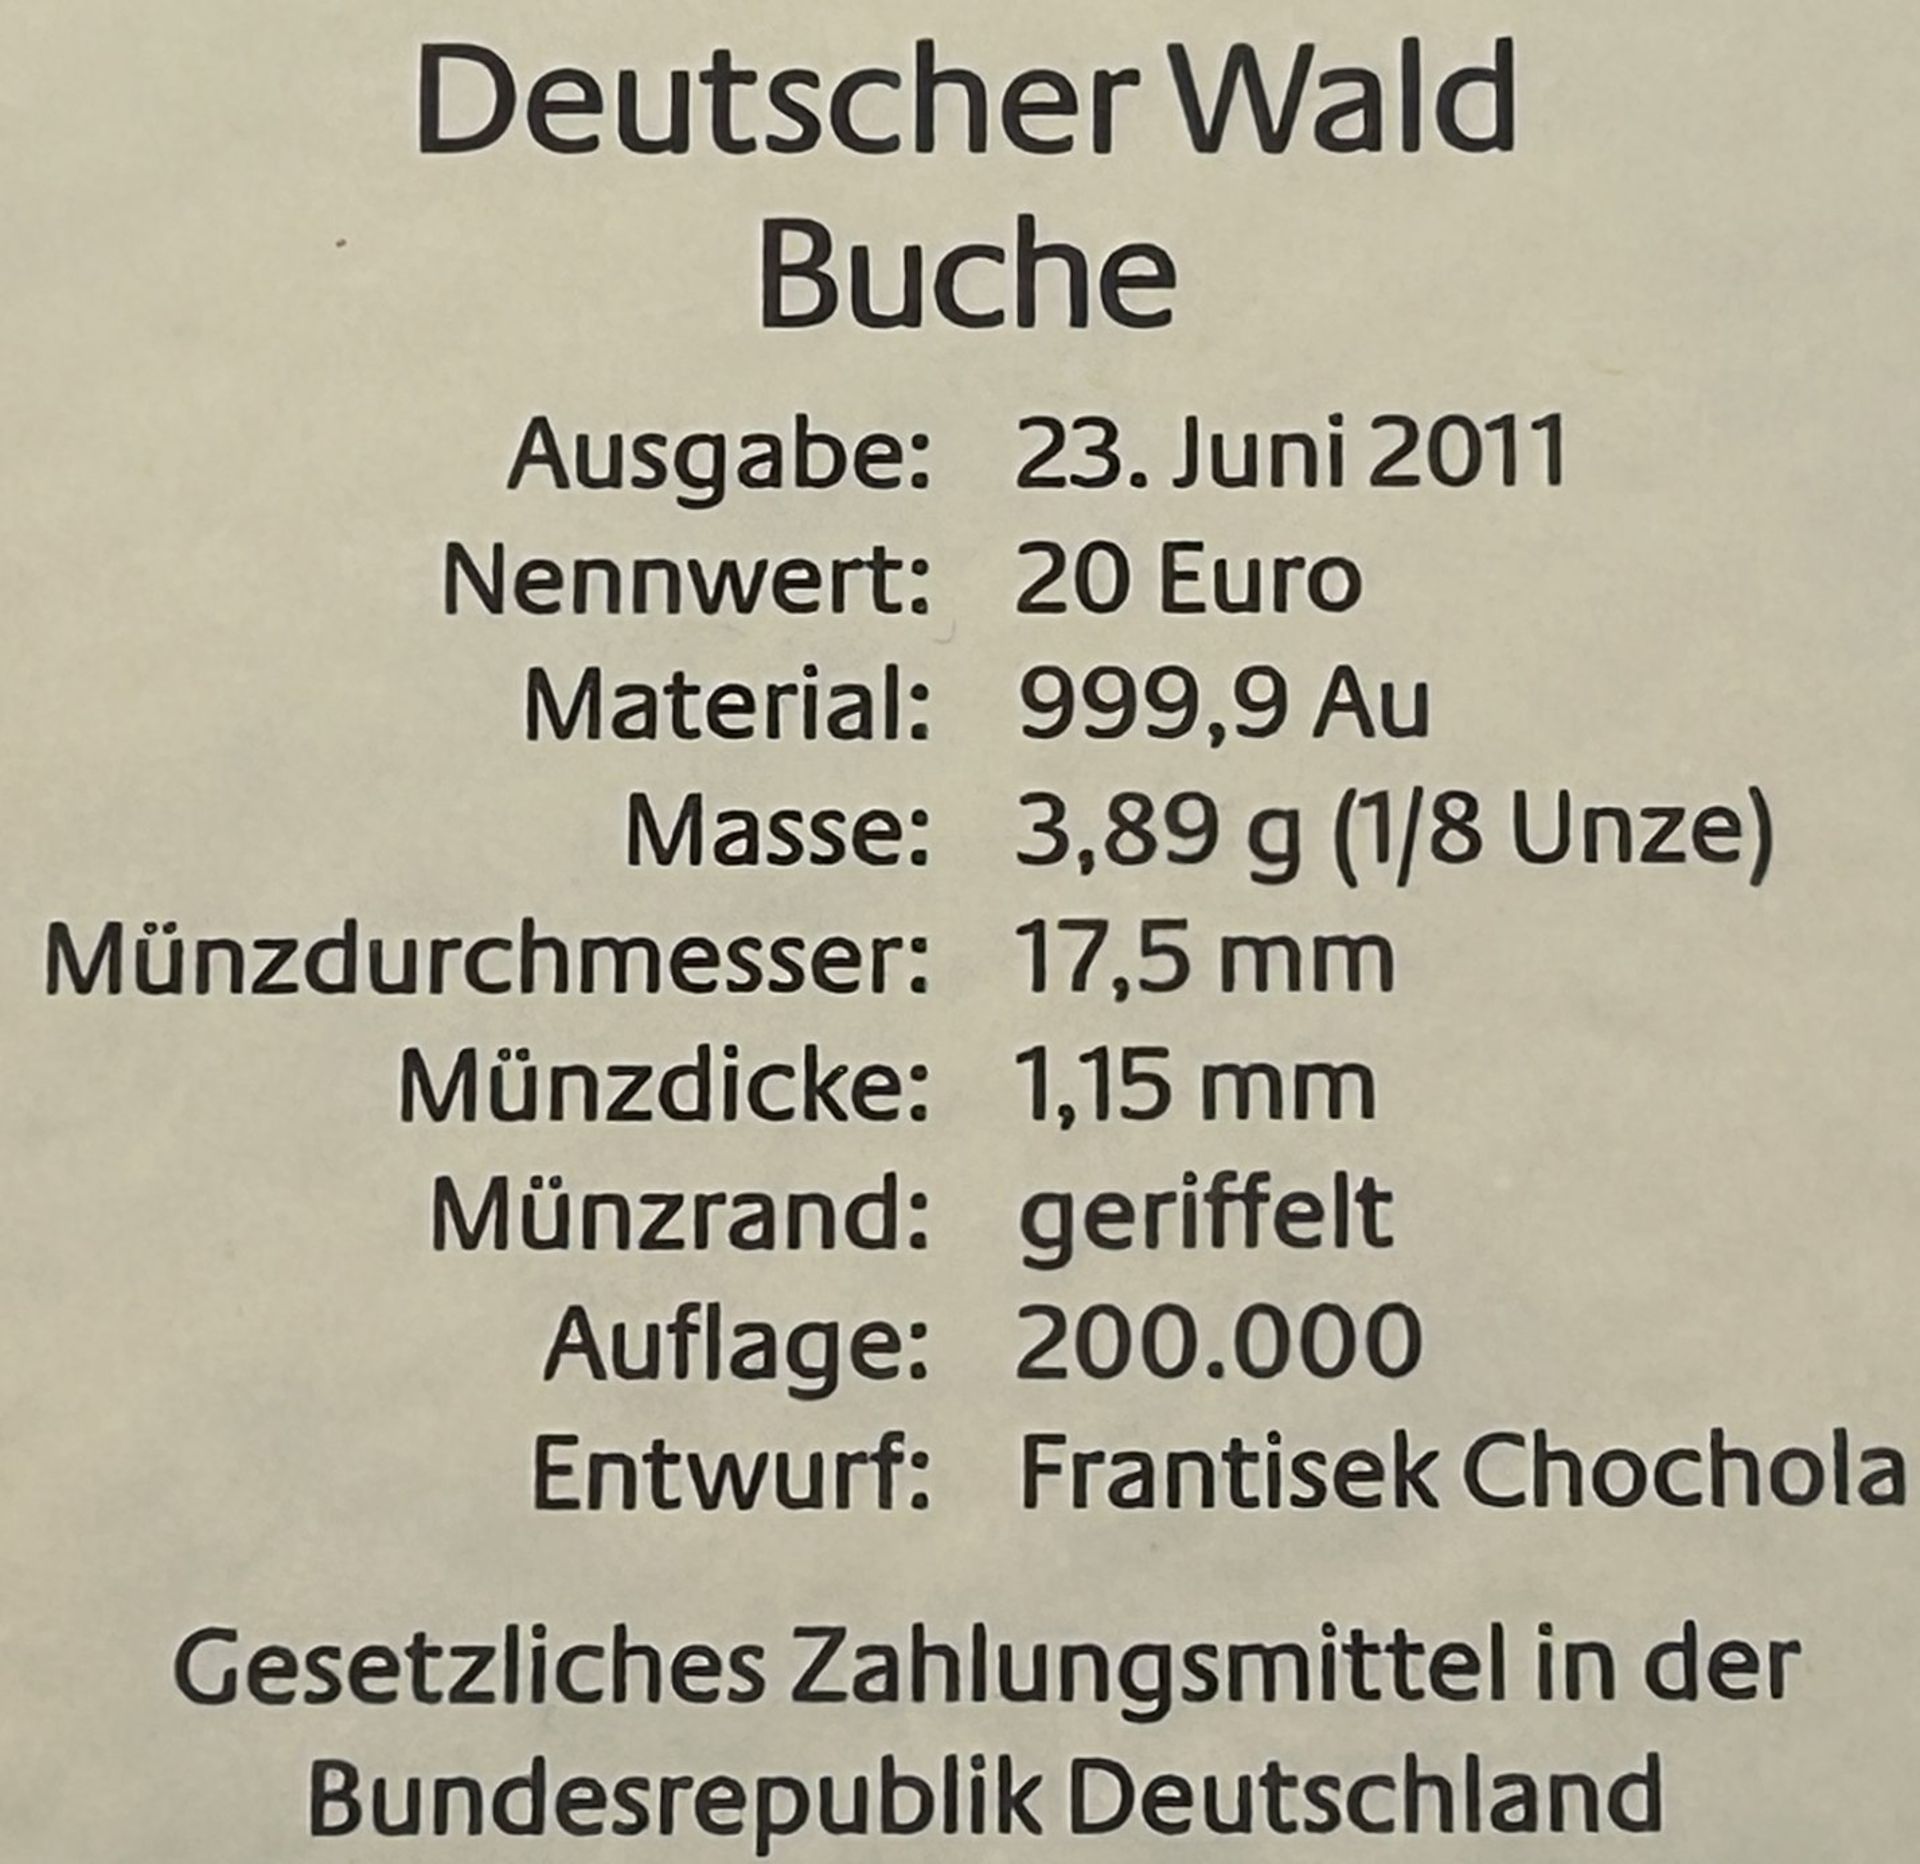 6x 20 € Goldmünzen-999-, Serie Der Deutsche Wald, mit Zertifikat, je 3,89 gramm (1/8 Unze), alle mi - Image 6 of 6